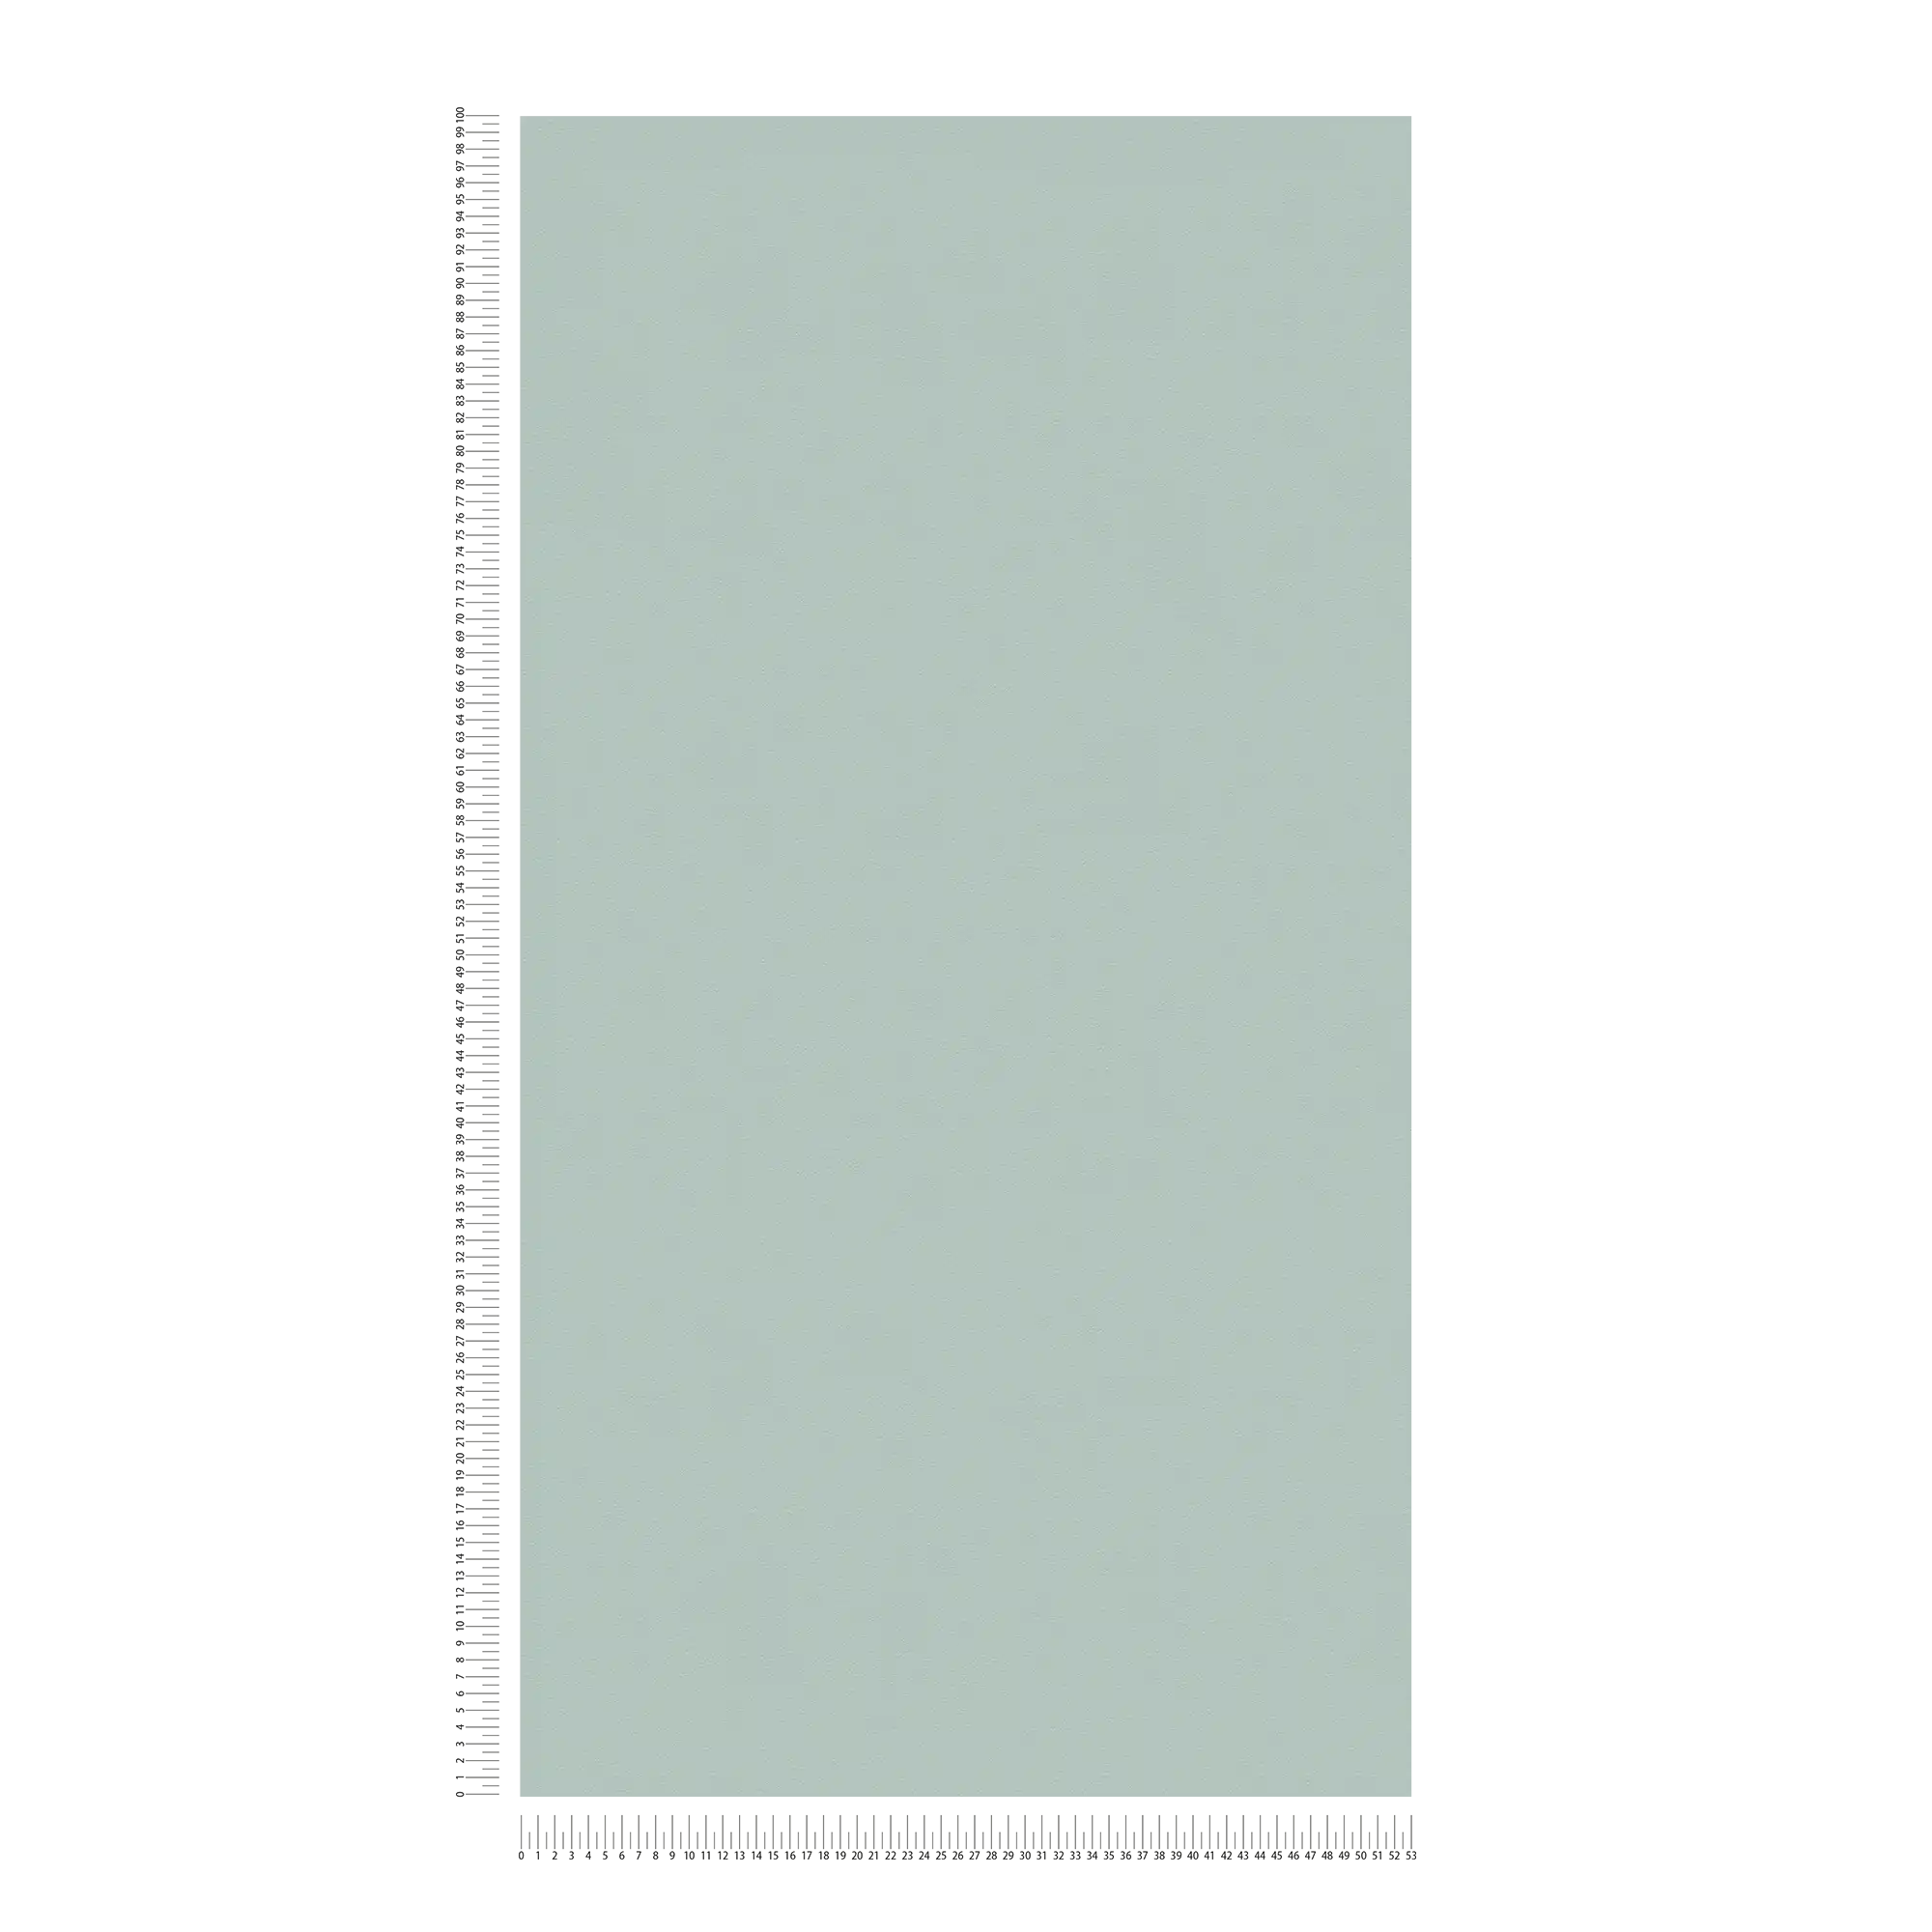             Effen behang met discrete structuur in textiellook - groen
        